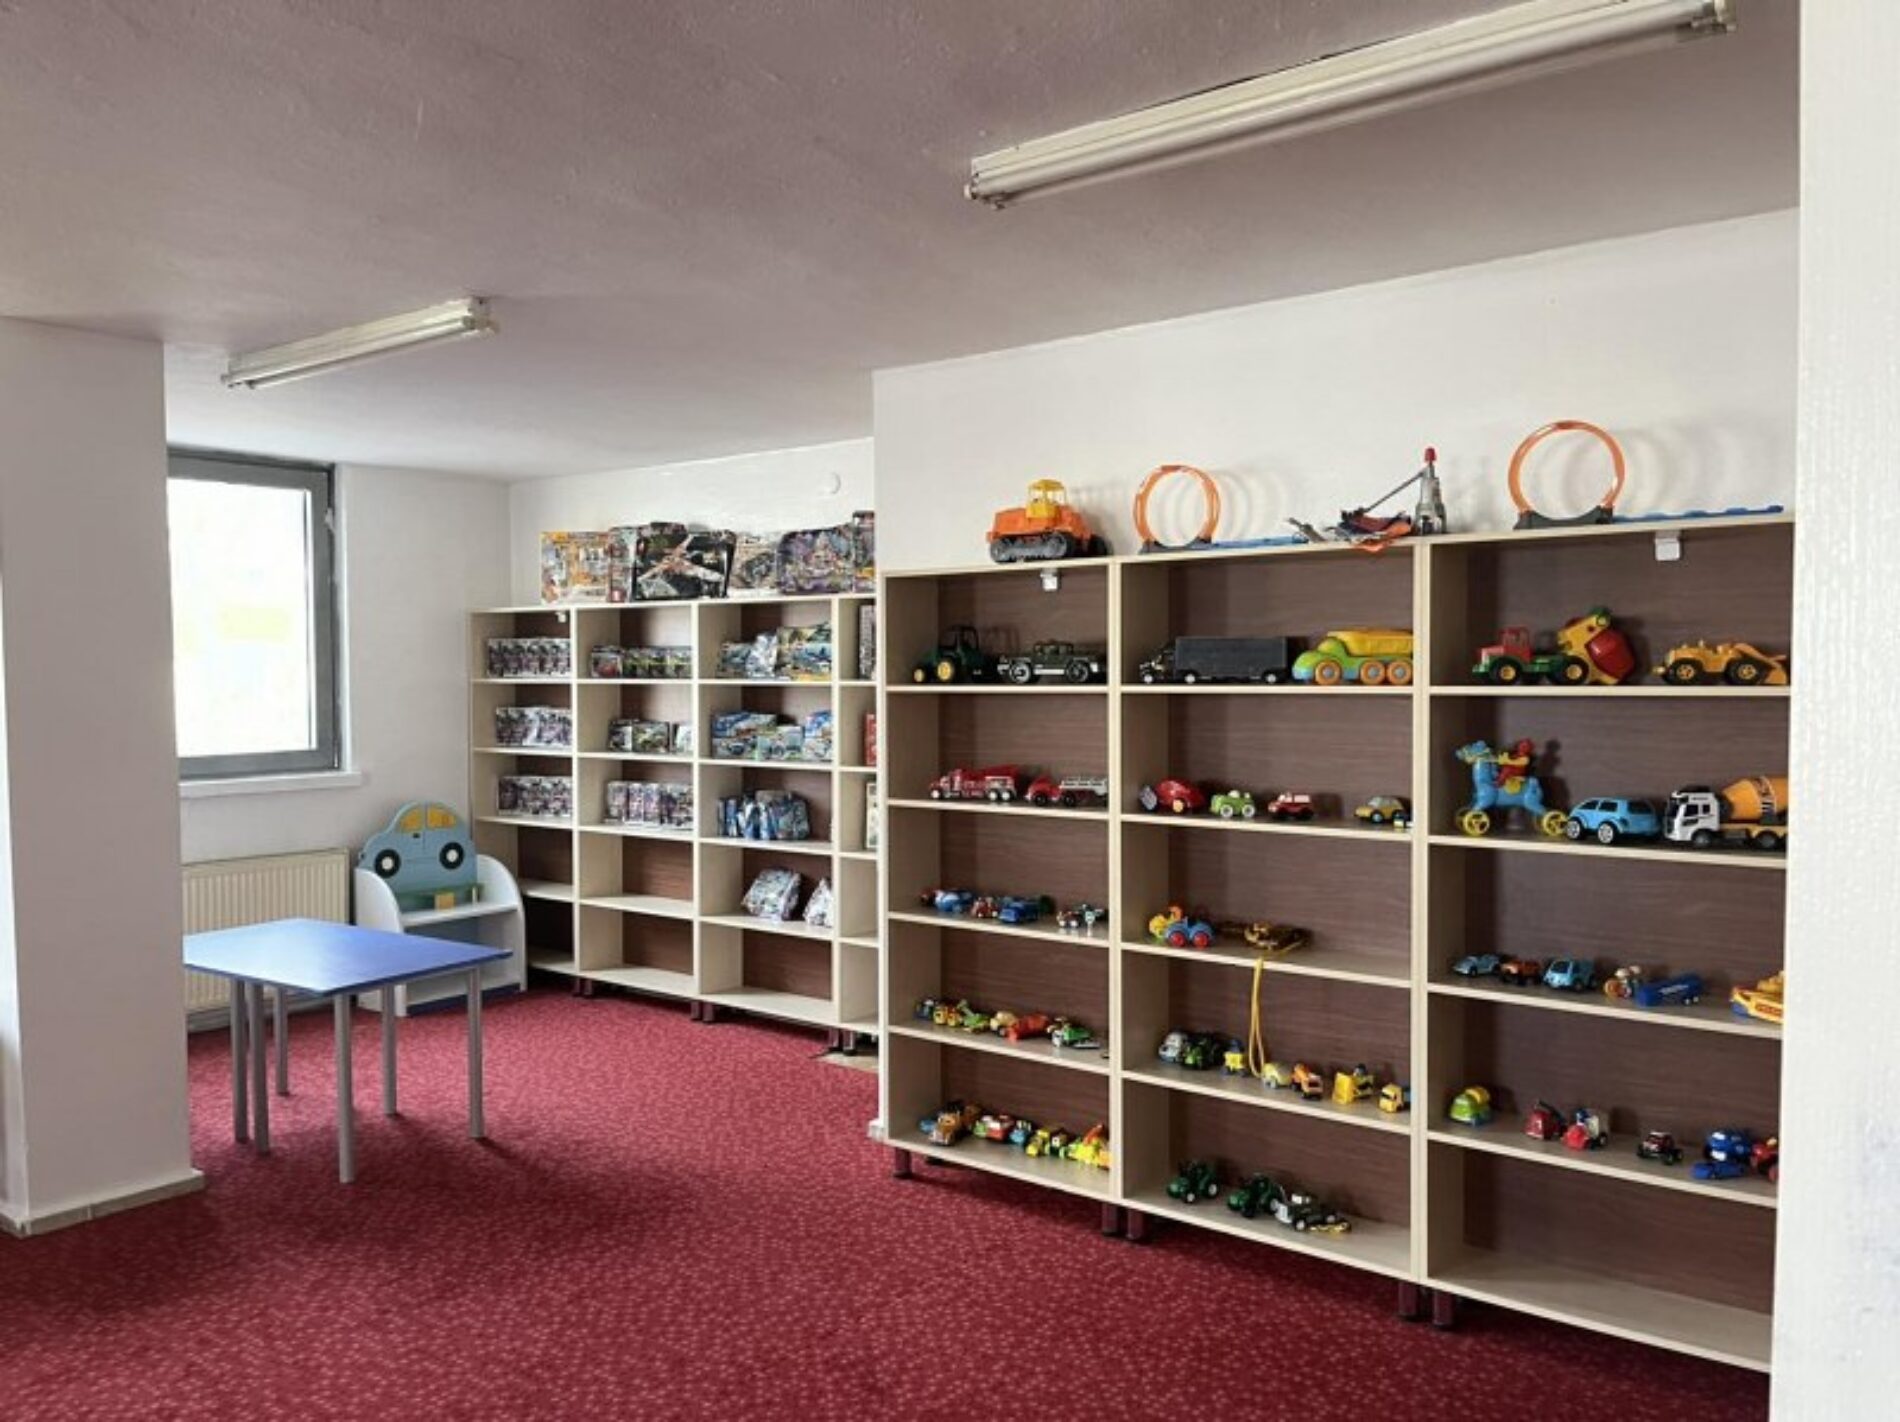 TYSD Genel Merkezimiz ABB İş Birliği ile TYSD Çocuk Kütüphanesi Açmaktadır